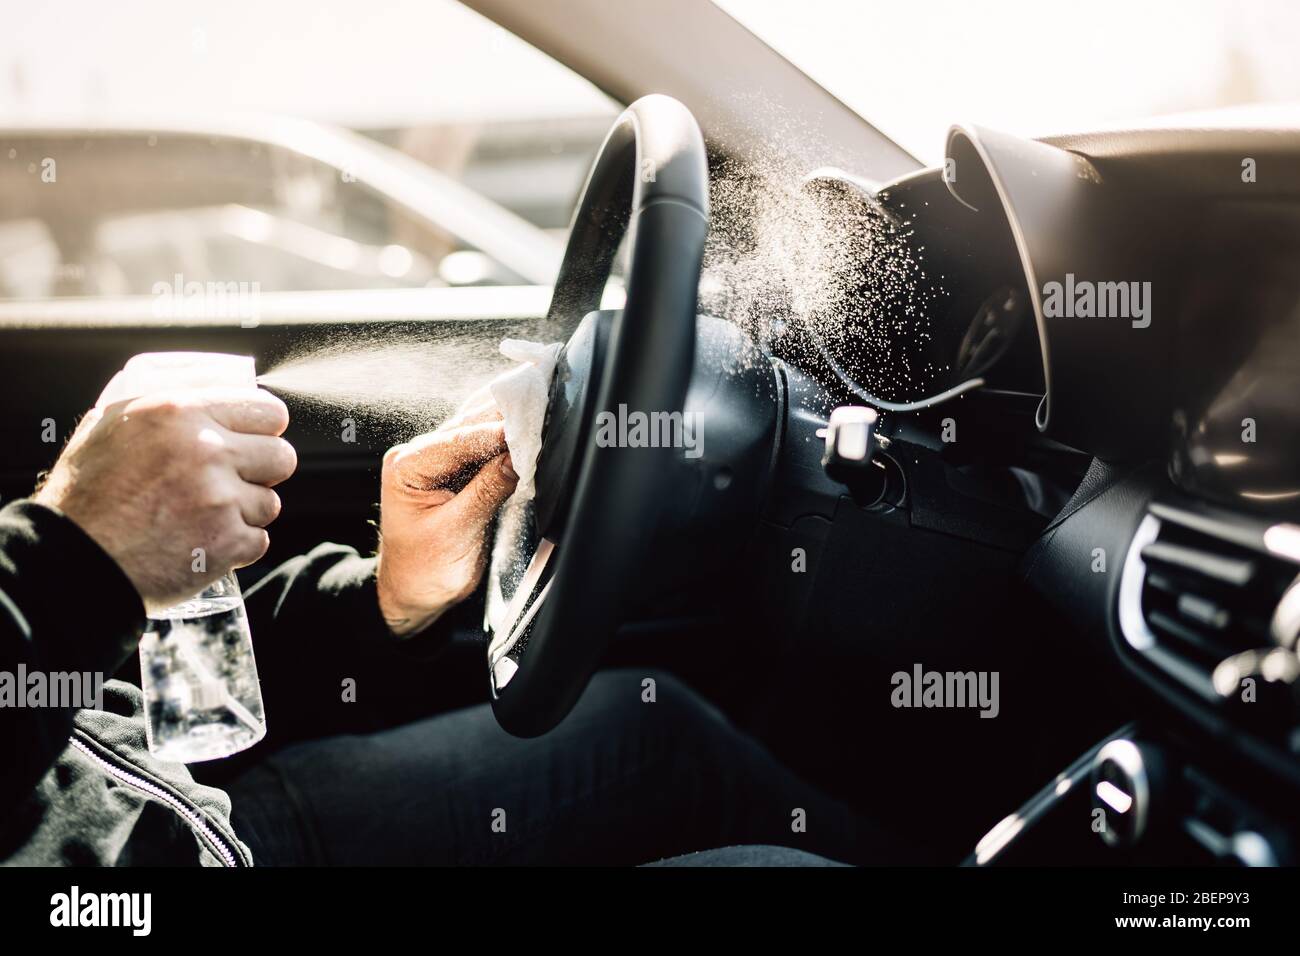 Autobesitzer desinfizieren Fahrzeug mit Alkohol-basierte Desinfektionslösung Spray.berührte Oberflächen Hygiene.Coronavirus COVID-19 Verbreitung Prävention.Cross-c Stockfoto